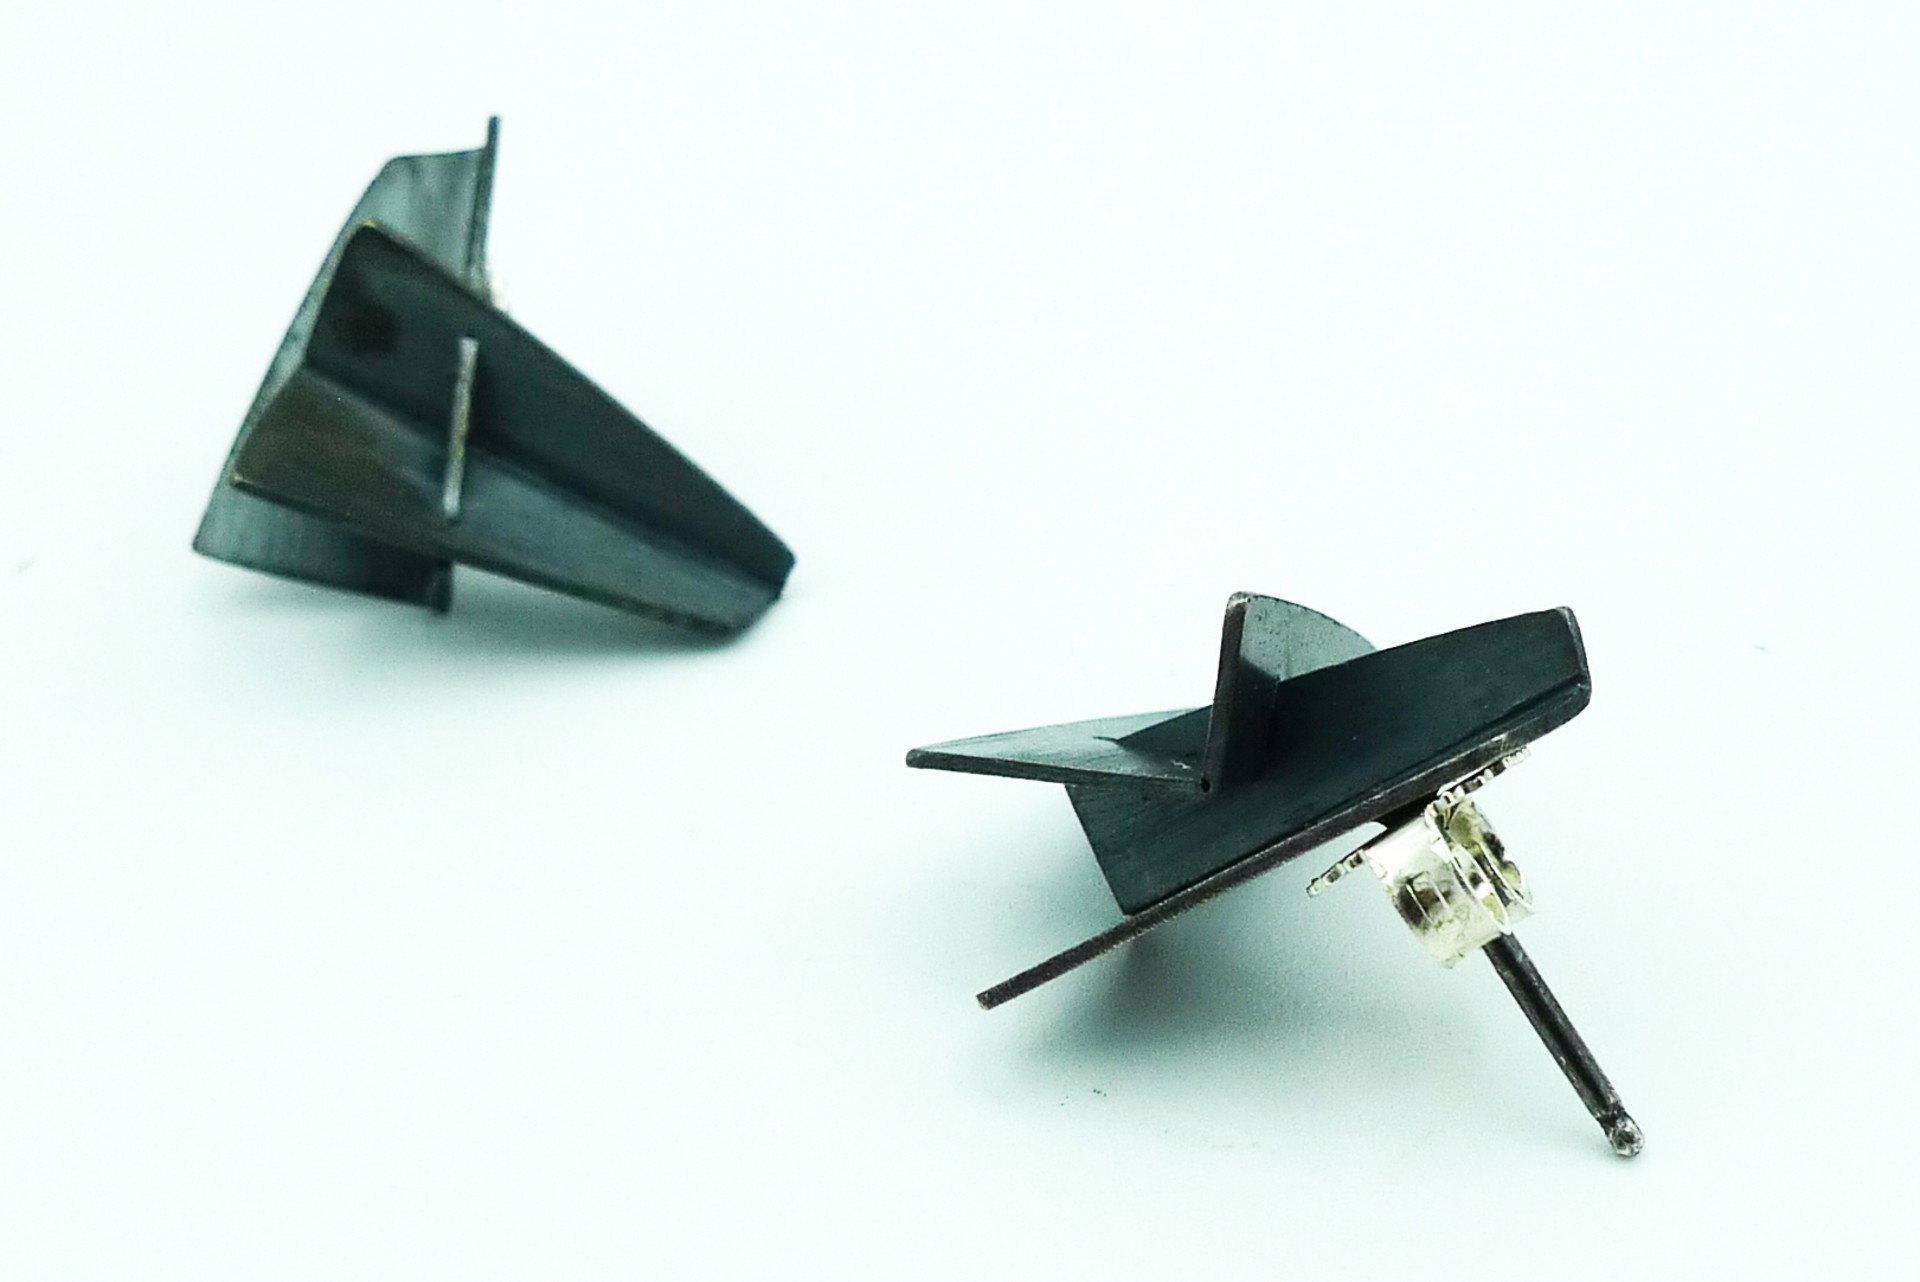 Small Oxidized Folded Post Earrings by Lauren Markley